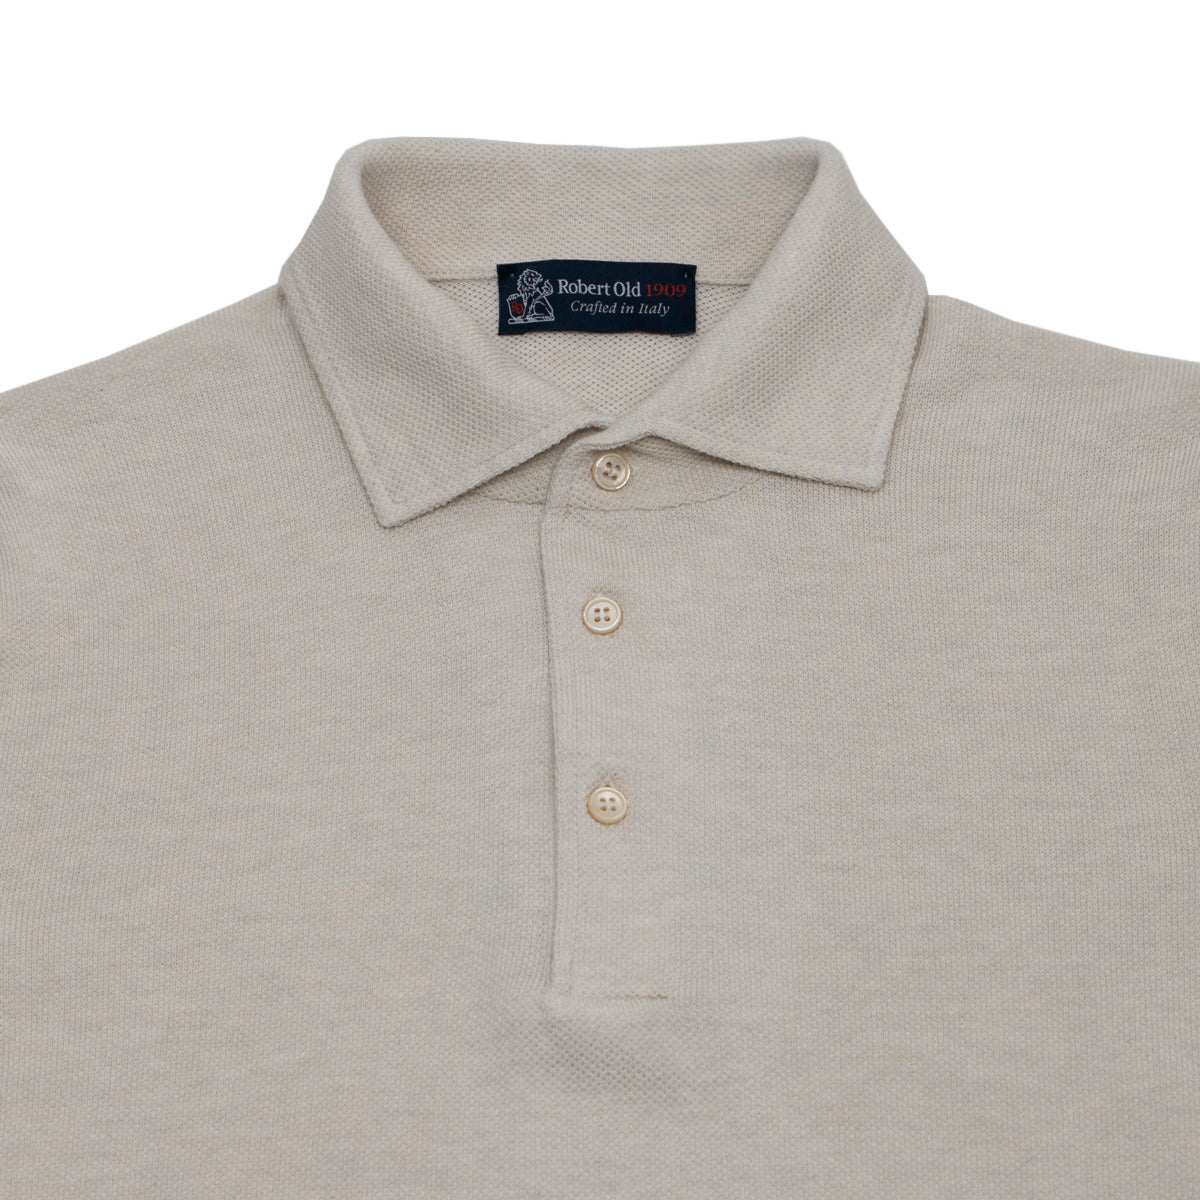 Beige Cotton Piqué Short Sleeve Polo Shirt  Robert Old   